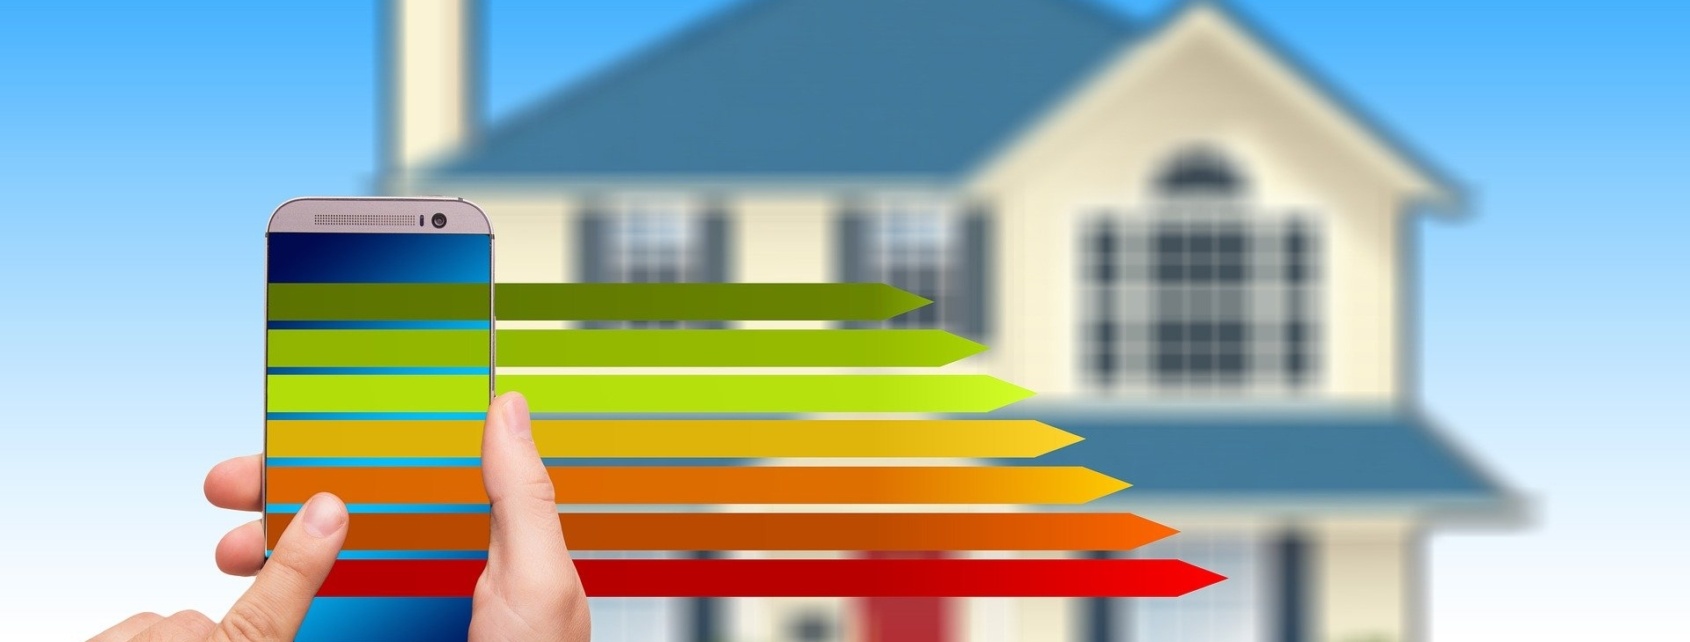 bilan énergétique améliorer performance énergétique maison